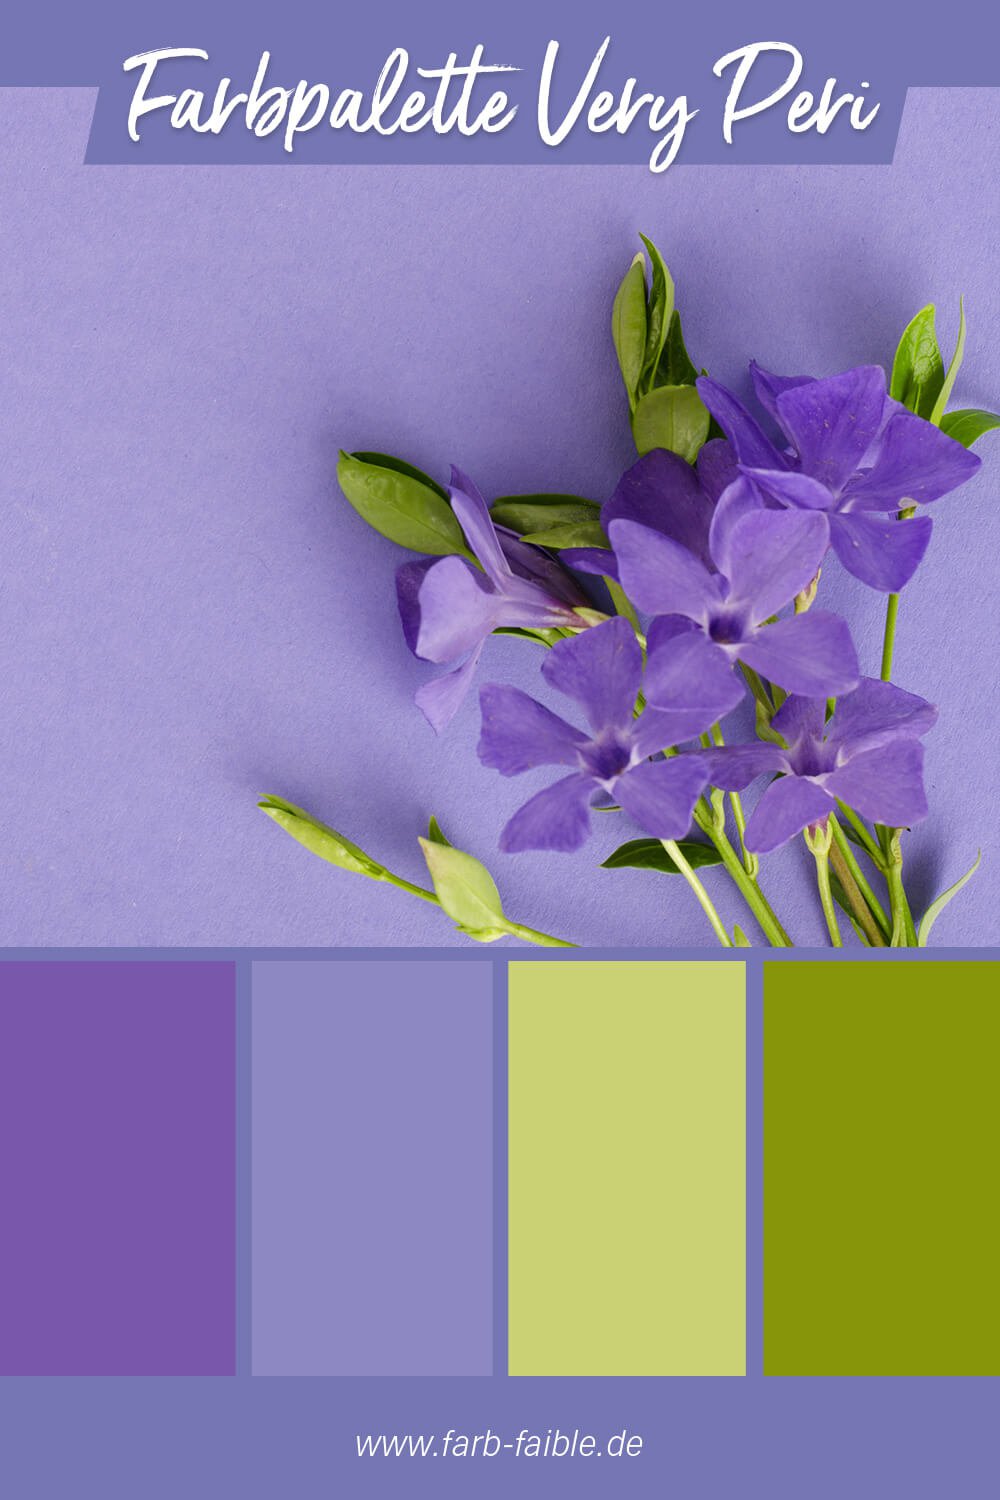 Pantone Farbe des Jahres 2022 Very Peri - Beispiel der Farbpalette mit Veilchenlila, Violett, Hellgrün und Dunkelgrün